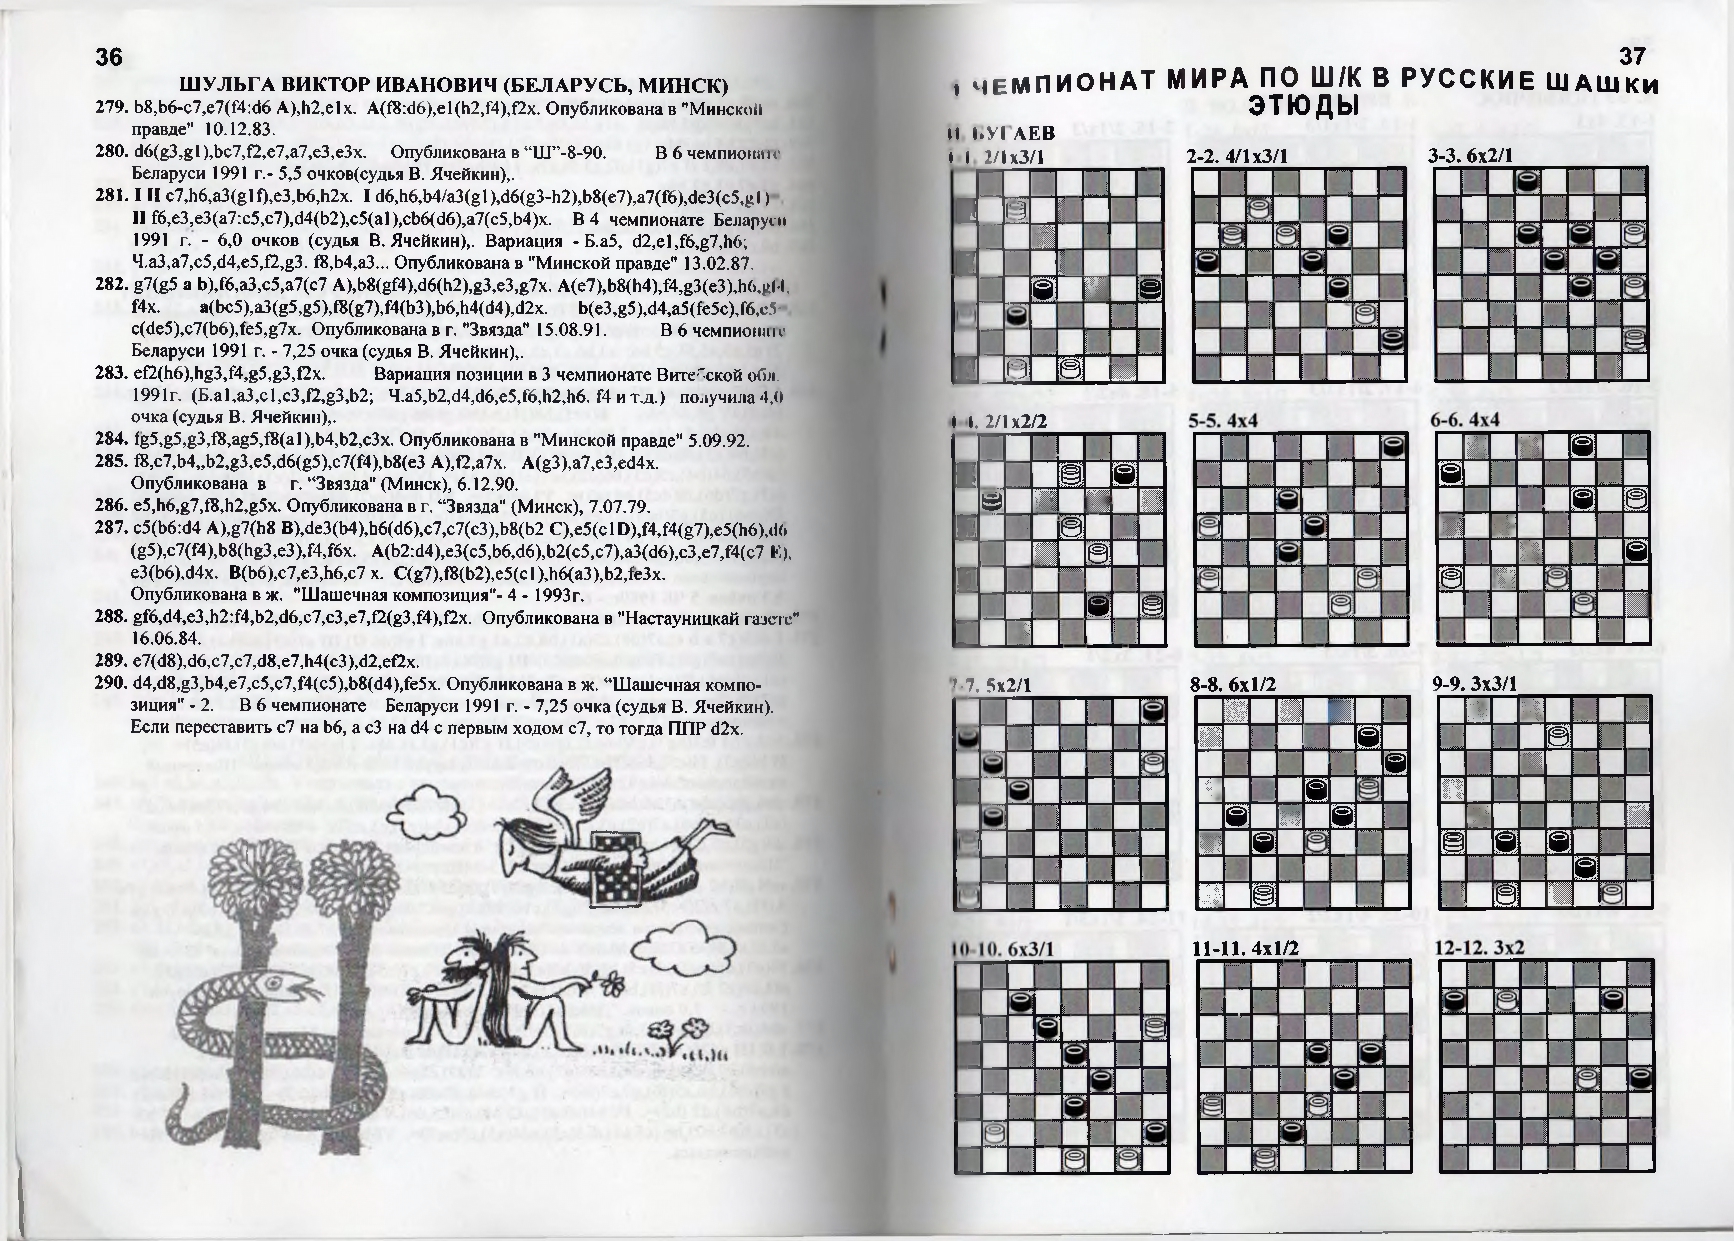 Gorin-Chempionat_mira_po_shashechnoy_kompozitsii_1994-339_page-0020.jpg